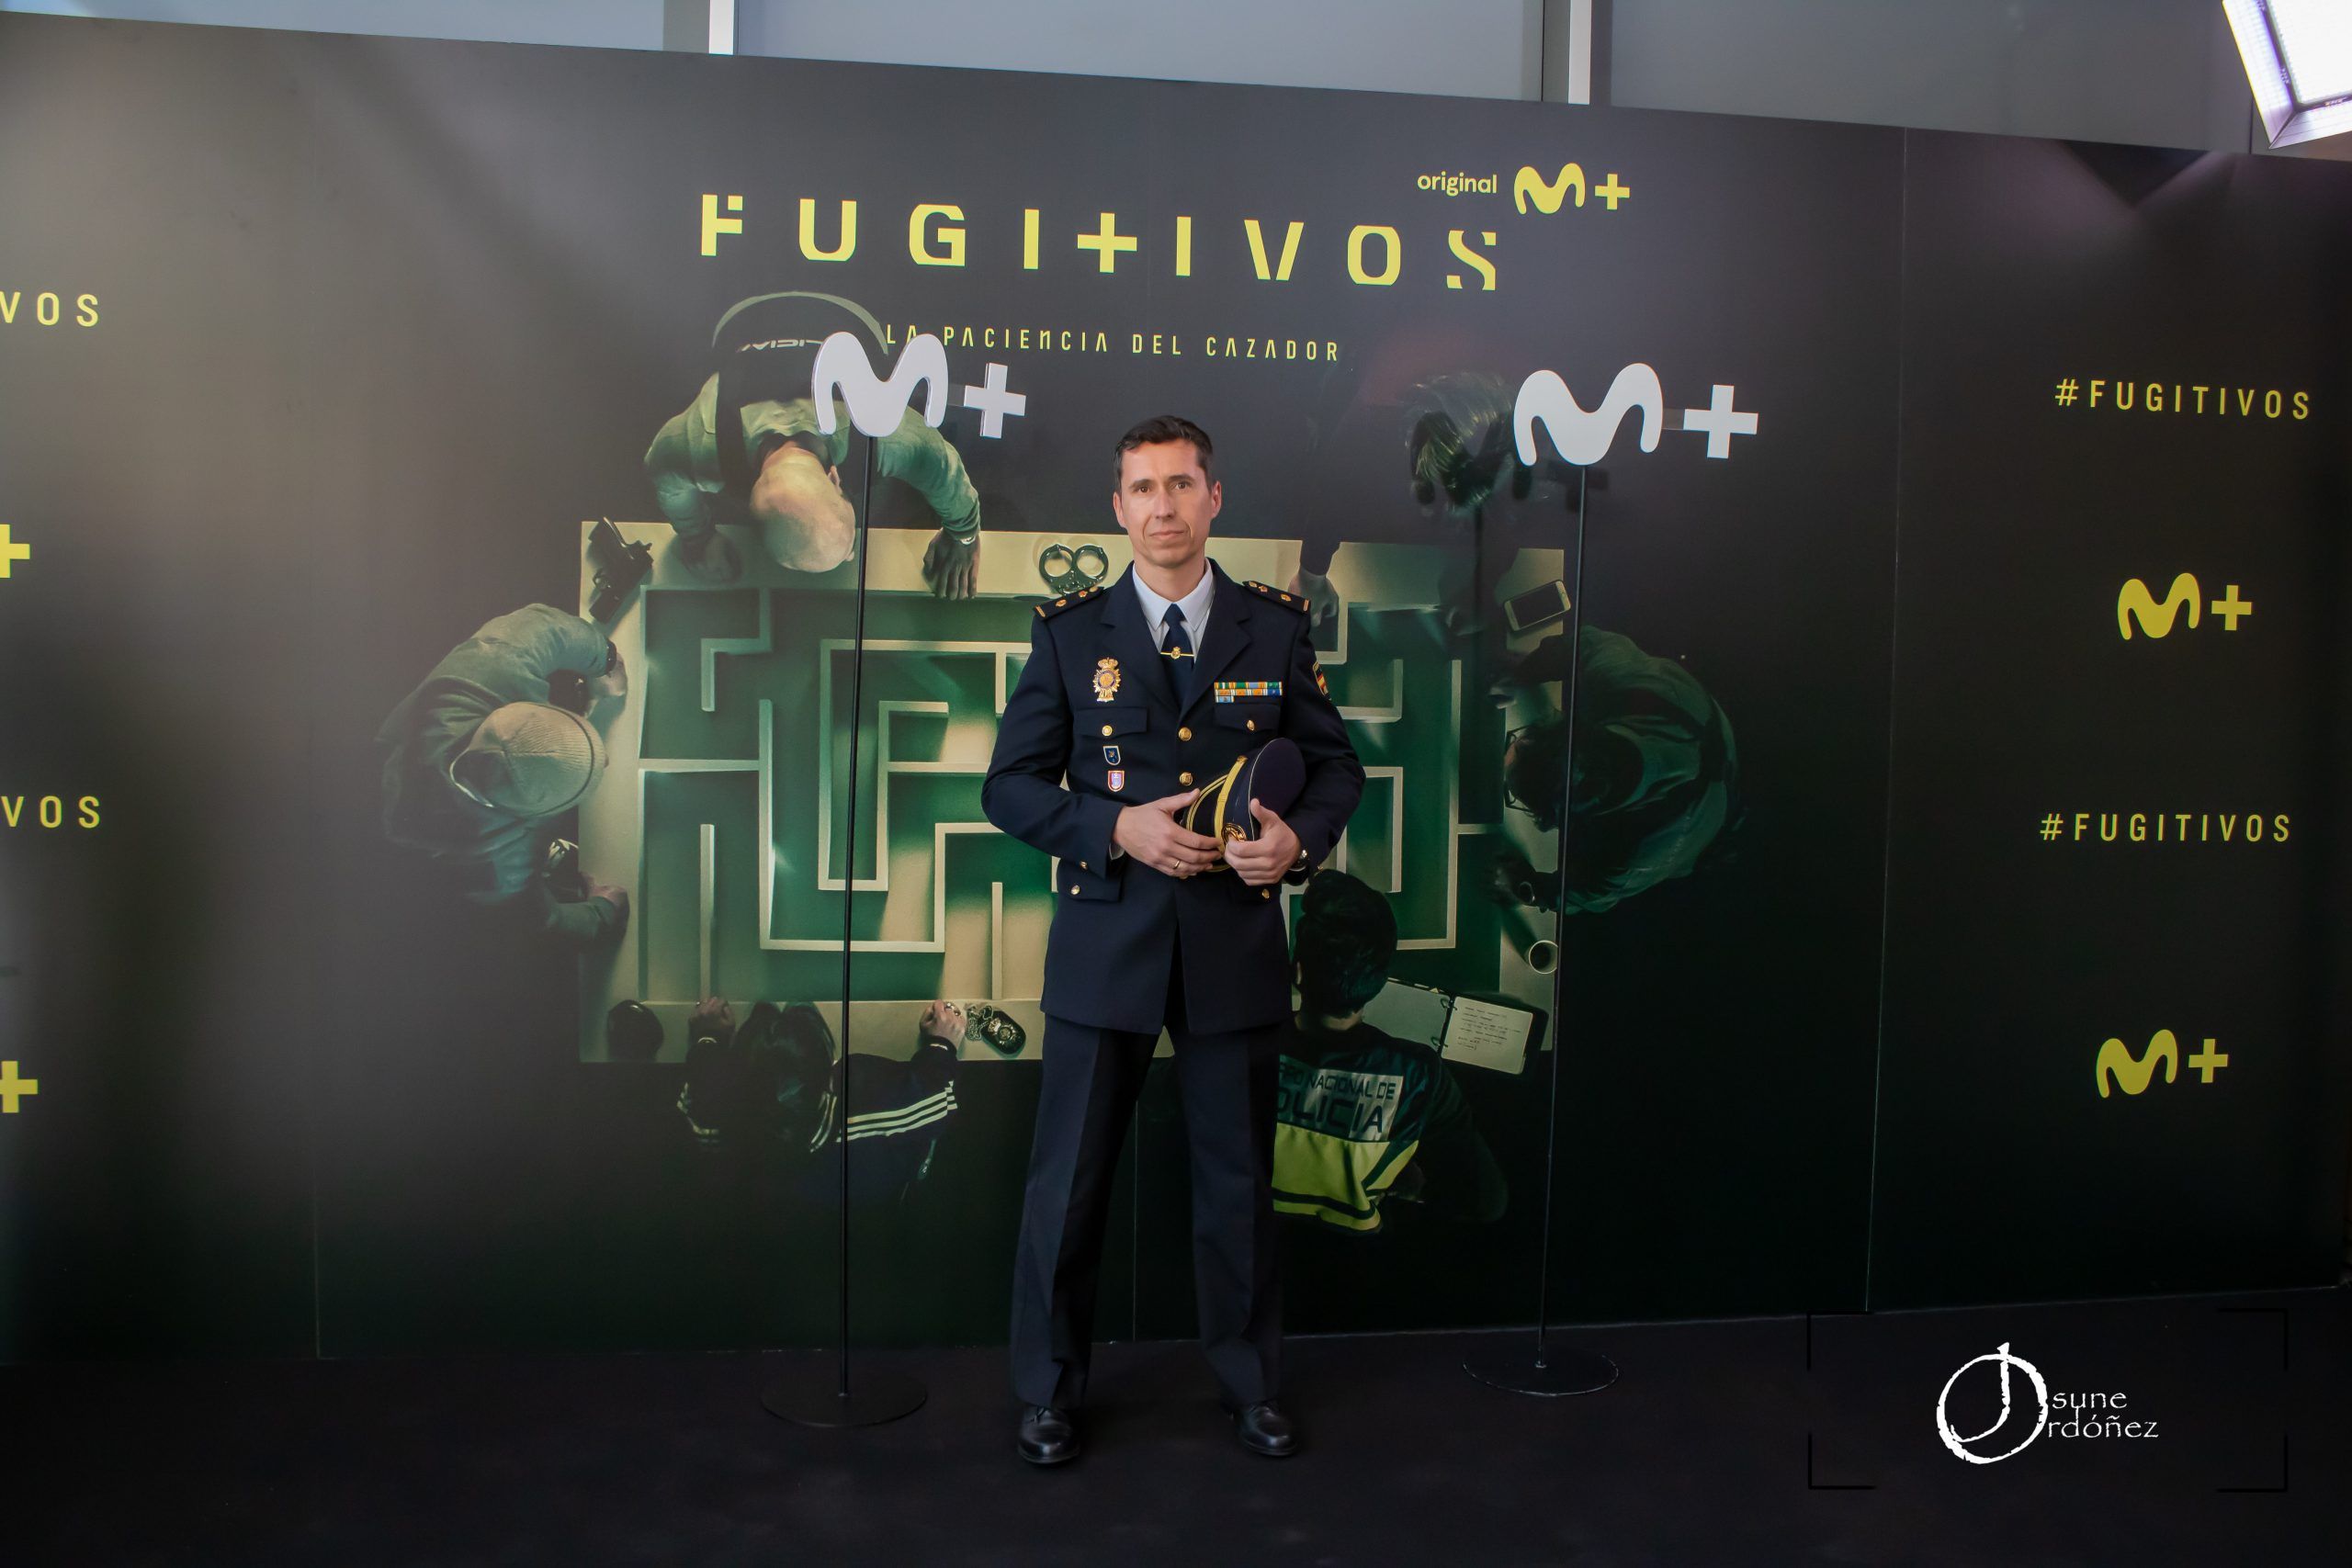 Presentación de Fugitivos, lo nuevo de Movistar +. Fotografía por Josune Ordóñez